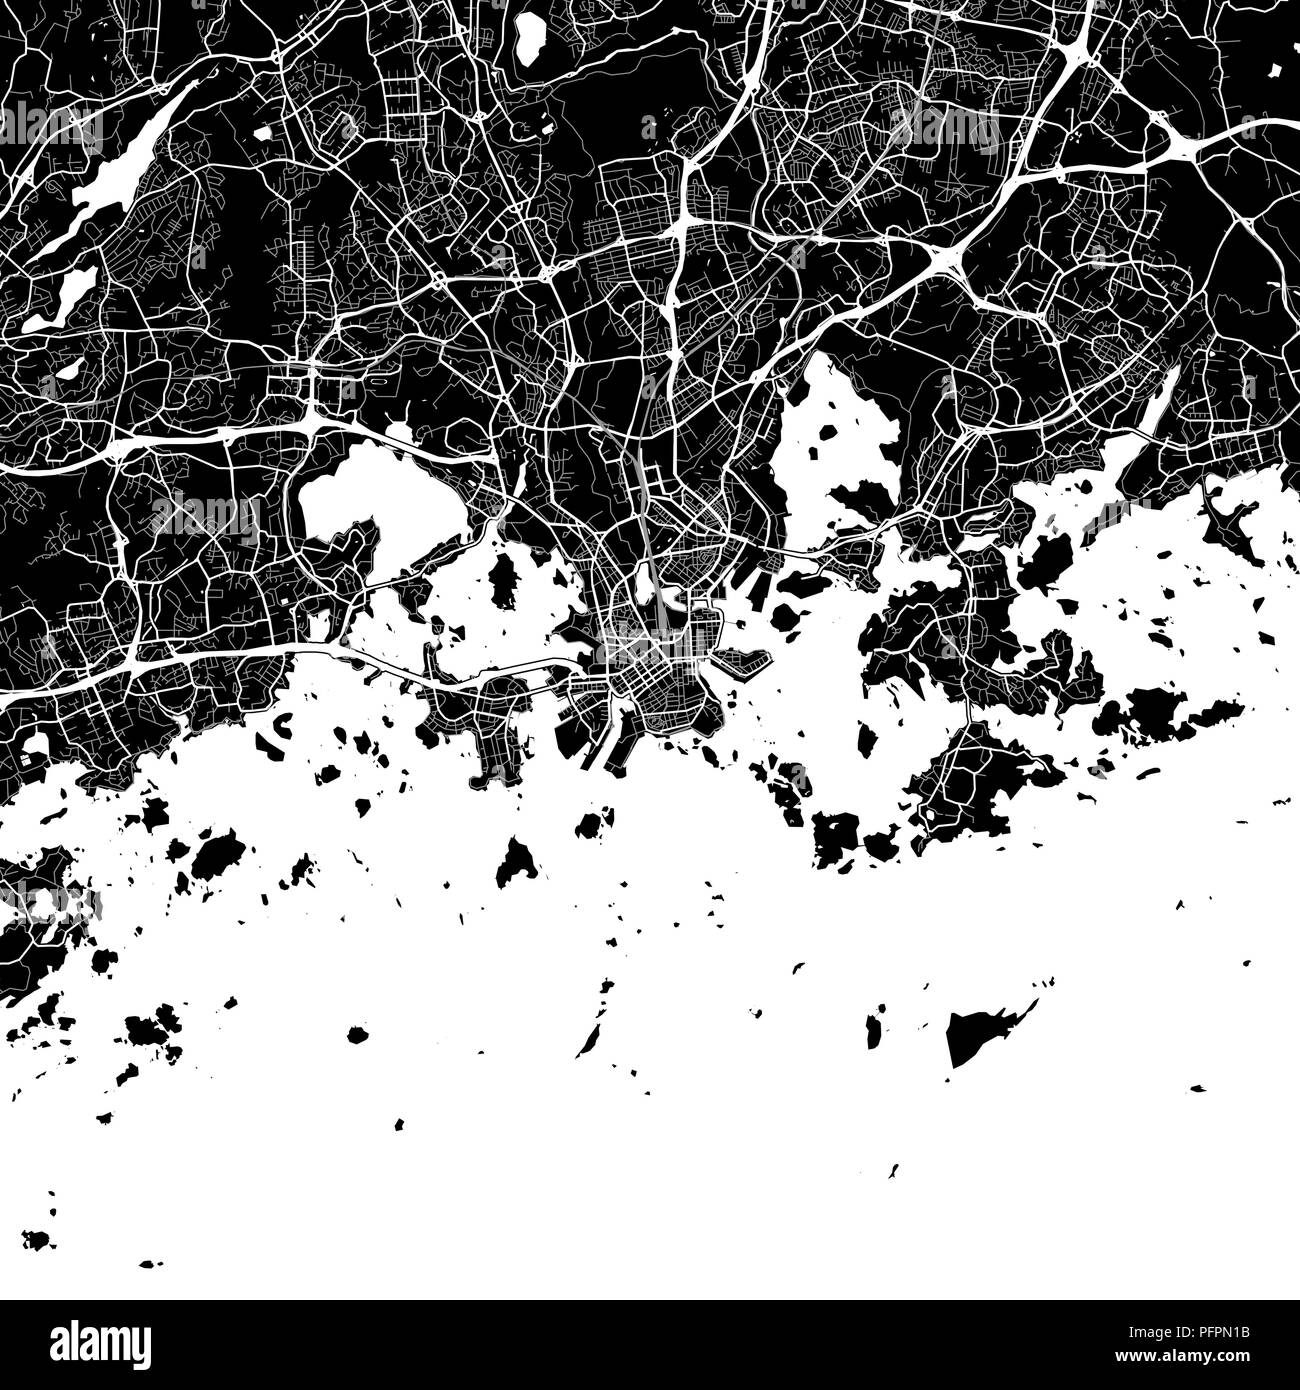 Stadtplan von Helsinki, Finnland. Der dunkle Hintergrund Version für Infografik und Marketing Projekte. Diese Karte von Helsinki, enthält typische Sehenswürdigkeiten mit s Stock Vektor